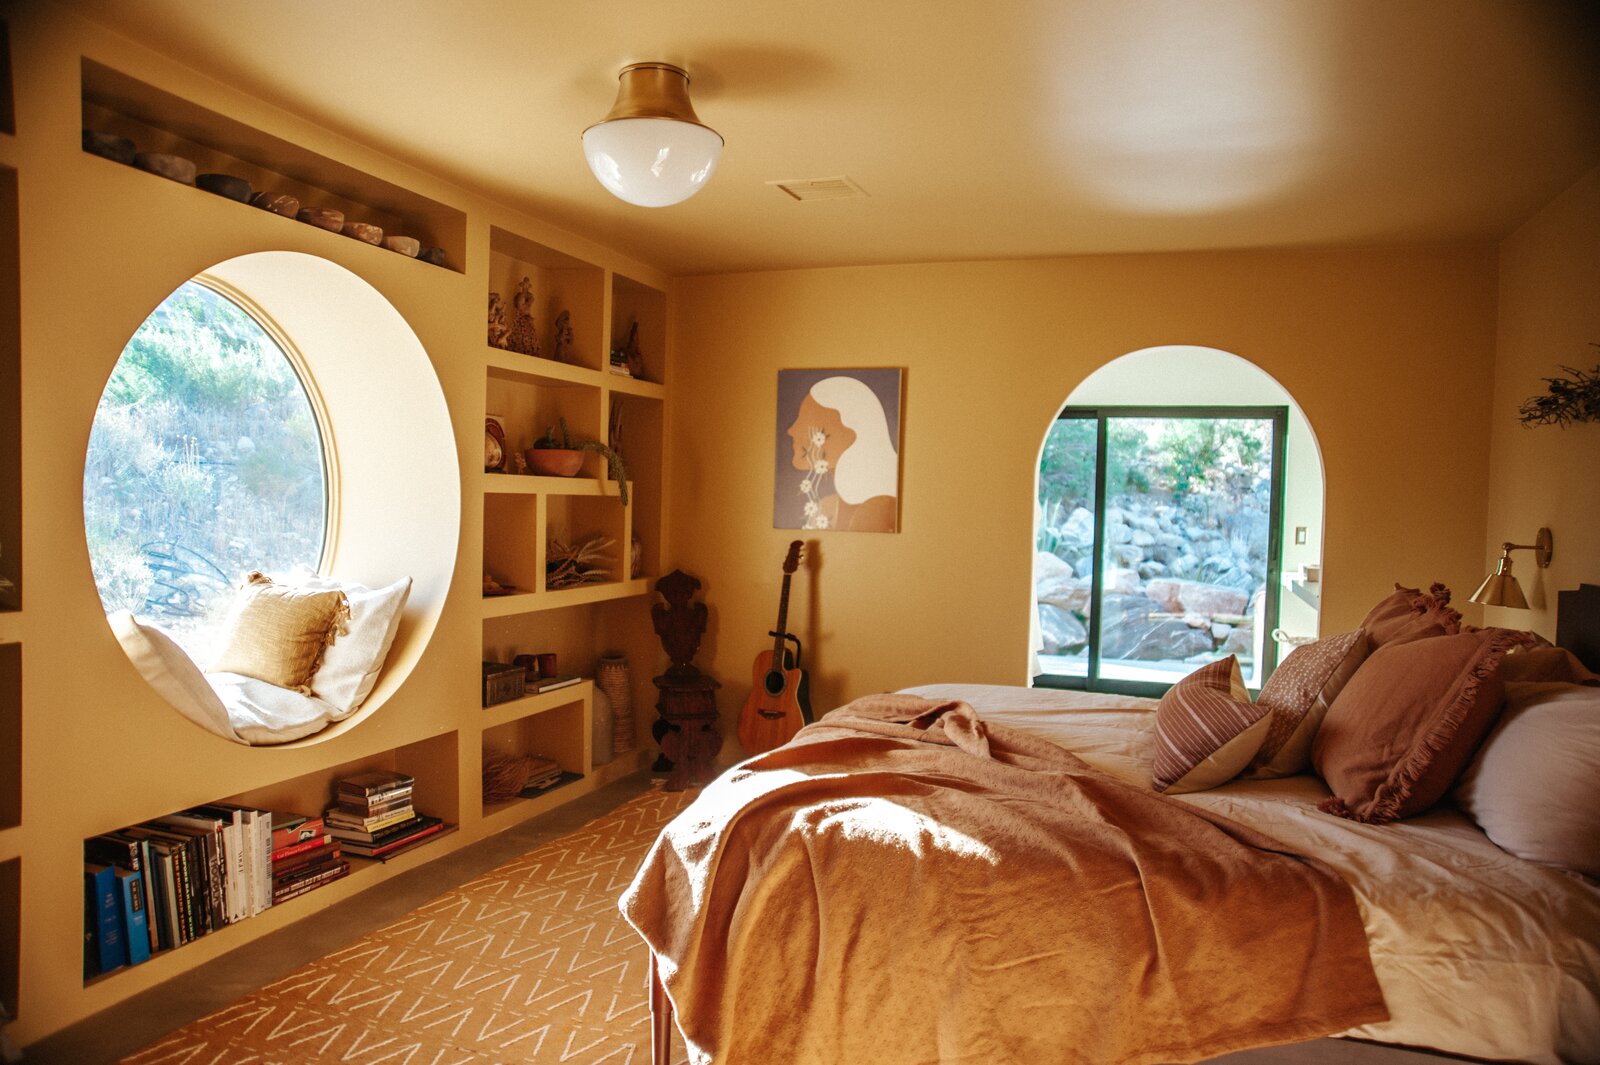 Ngôi nhà ở California do Claire Thomas thiết kế, khu vực ghế nghỉ ở cửa sổ tròn với những chiếc gối ôm và gối tựa êm ái. Bên cạnh đó, cửa chính kiểu mái vòm kết hợp tạo nên khung cảnh mộng mơ cho gia chủ.